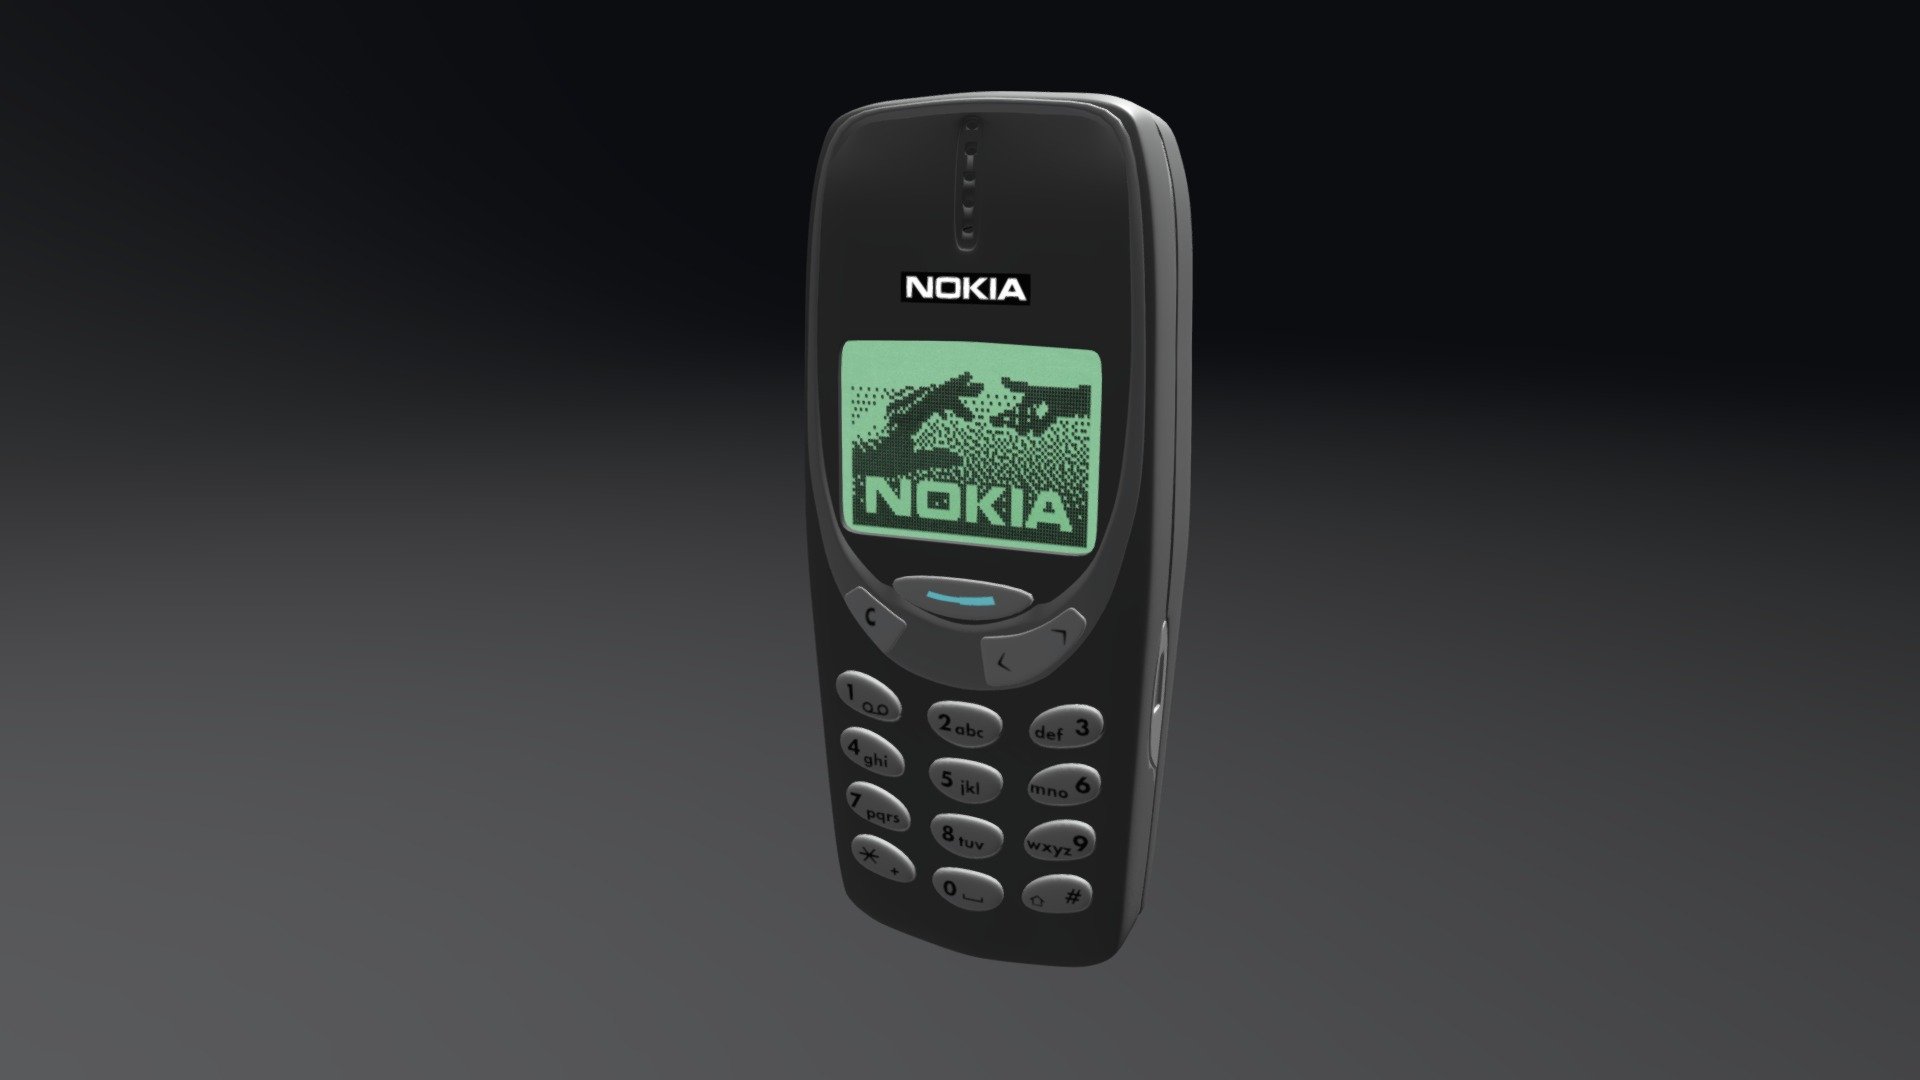 Old school Nokia 3310 - Nokia 3310 - 3D model by blendertommy1441 3d model